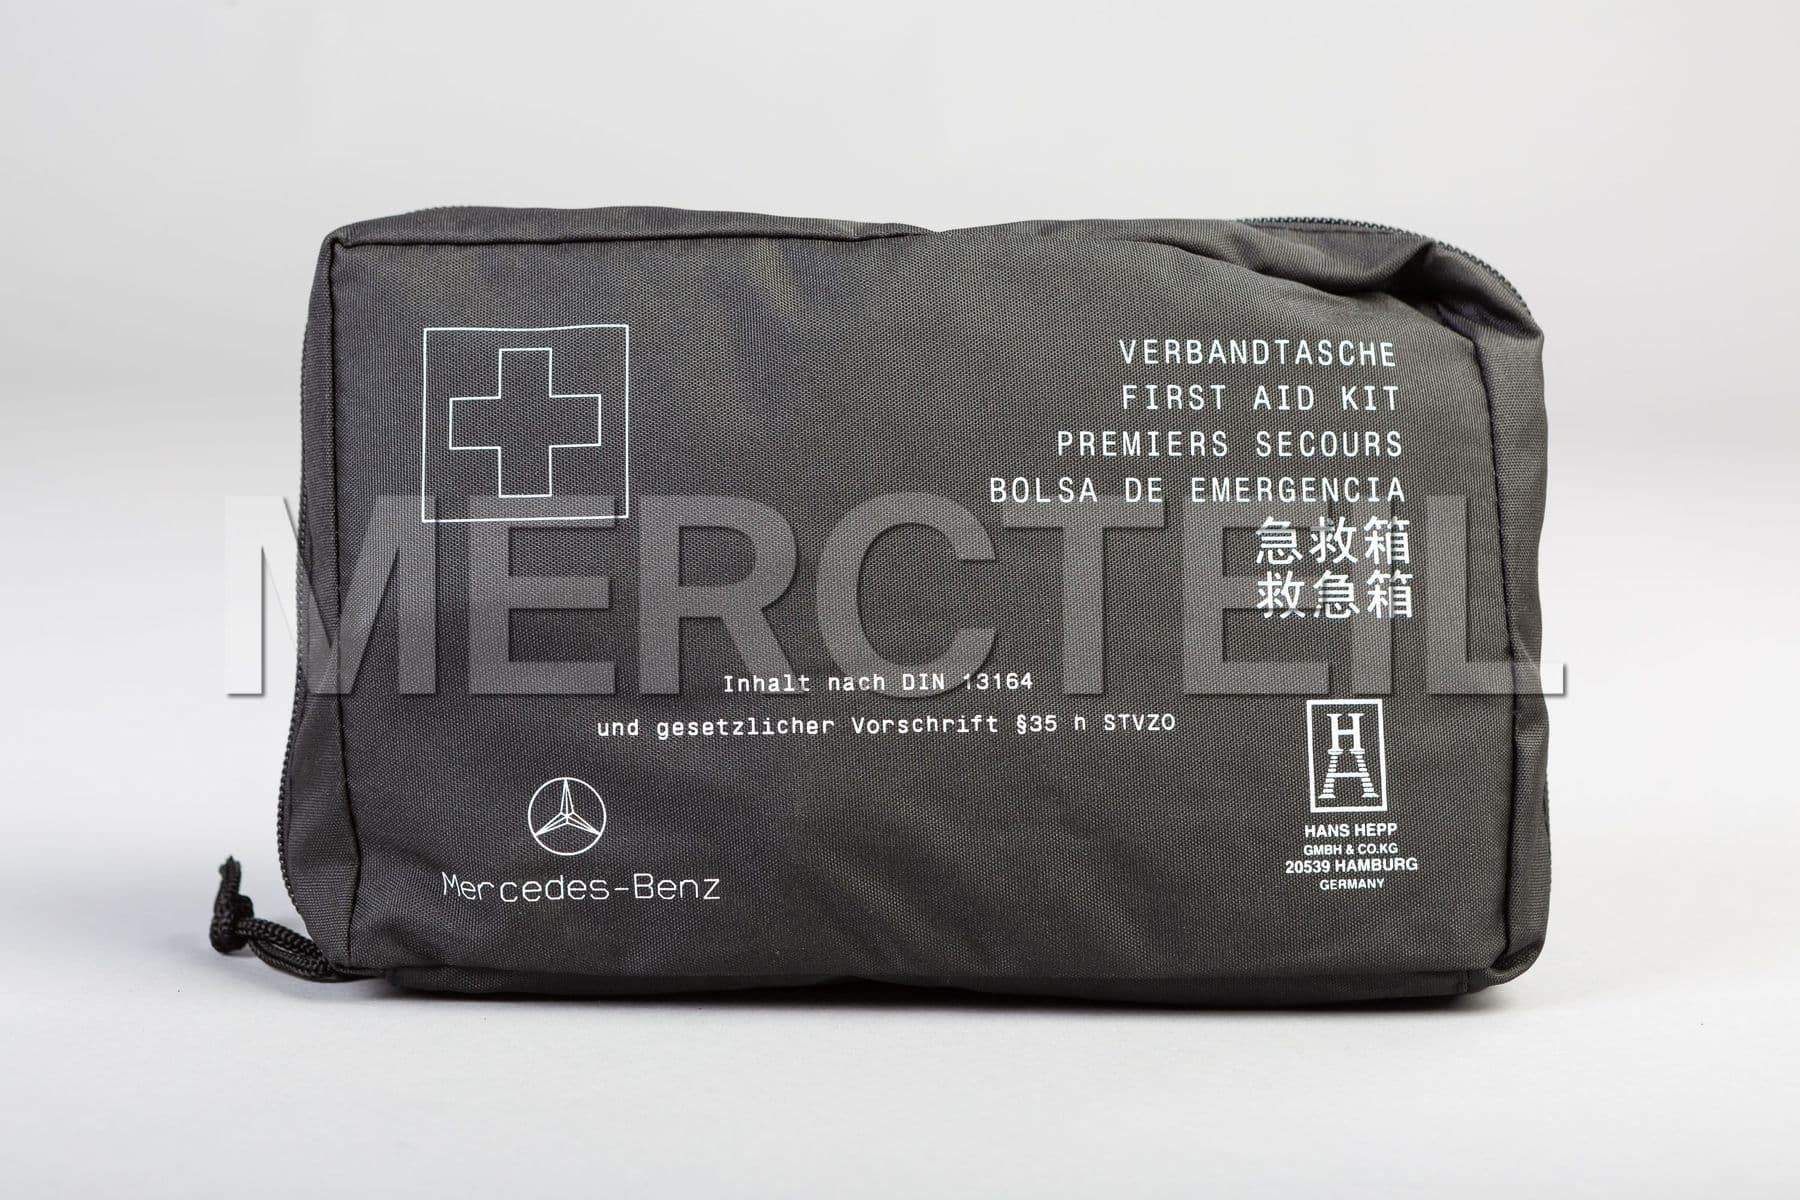 https://mercteil.com/s3/a-1698600150-mercedes-benz-first-aid-kit-1629216532386-x2.jpg